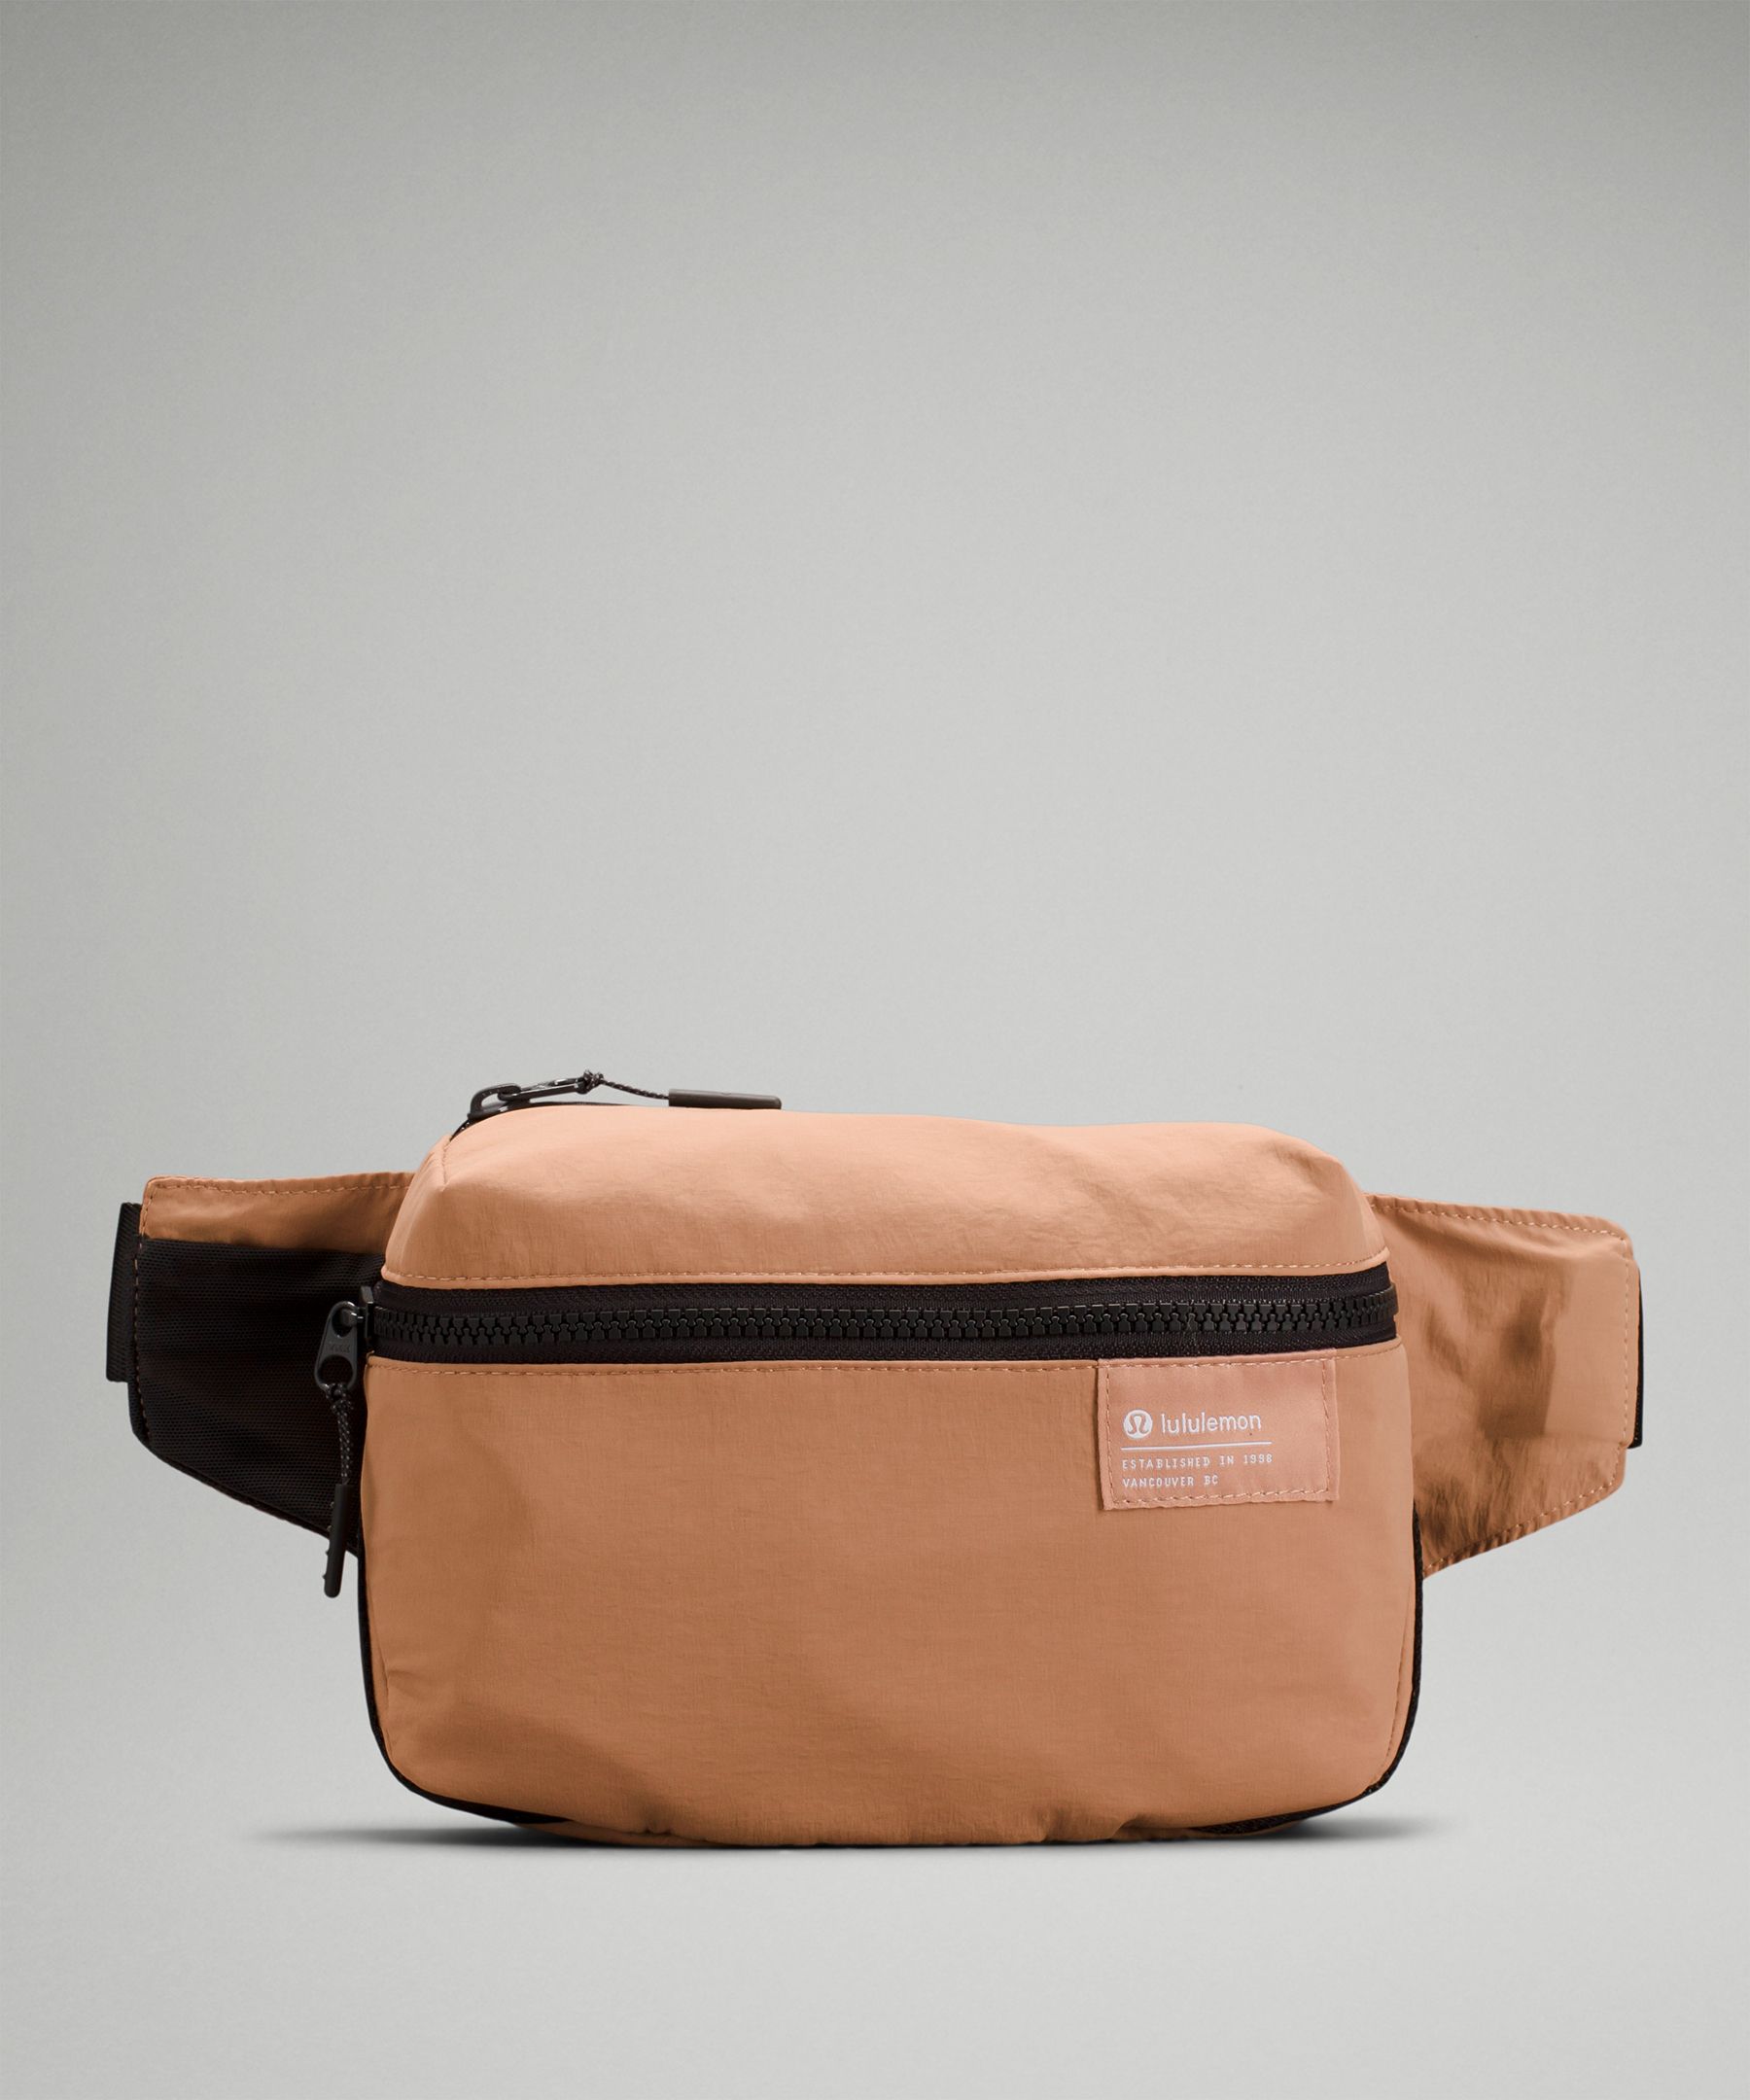 Lululemon Clean Lines Belt Bag In Pink Clay/graphite Grey